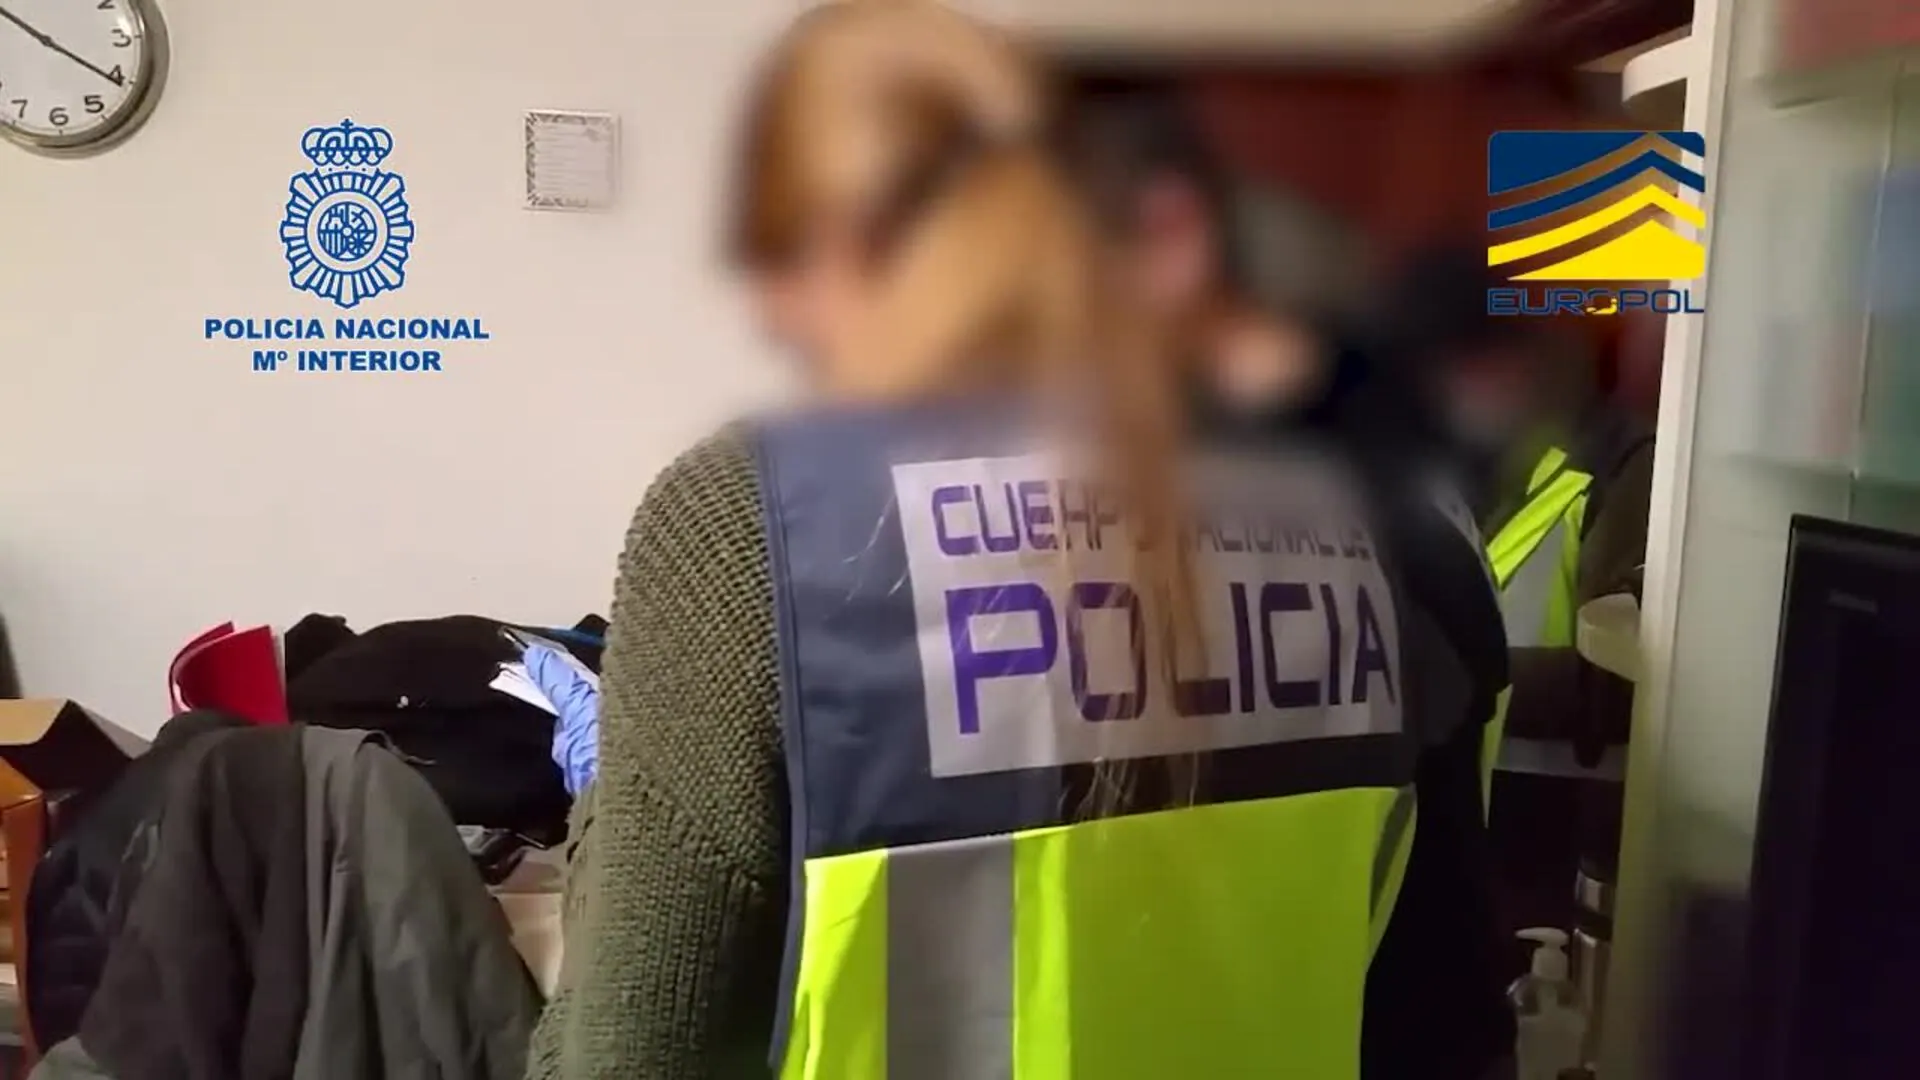 Macrooperación contra pedófilos en la Red, con un detenido en Canarias